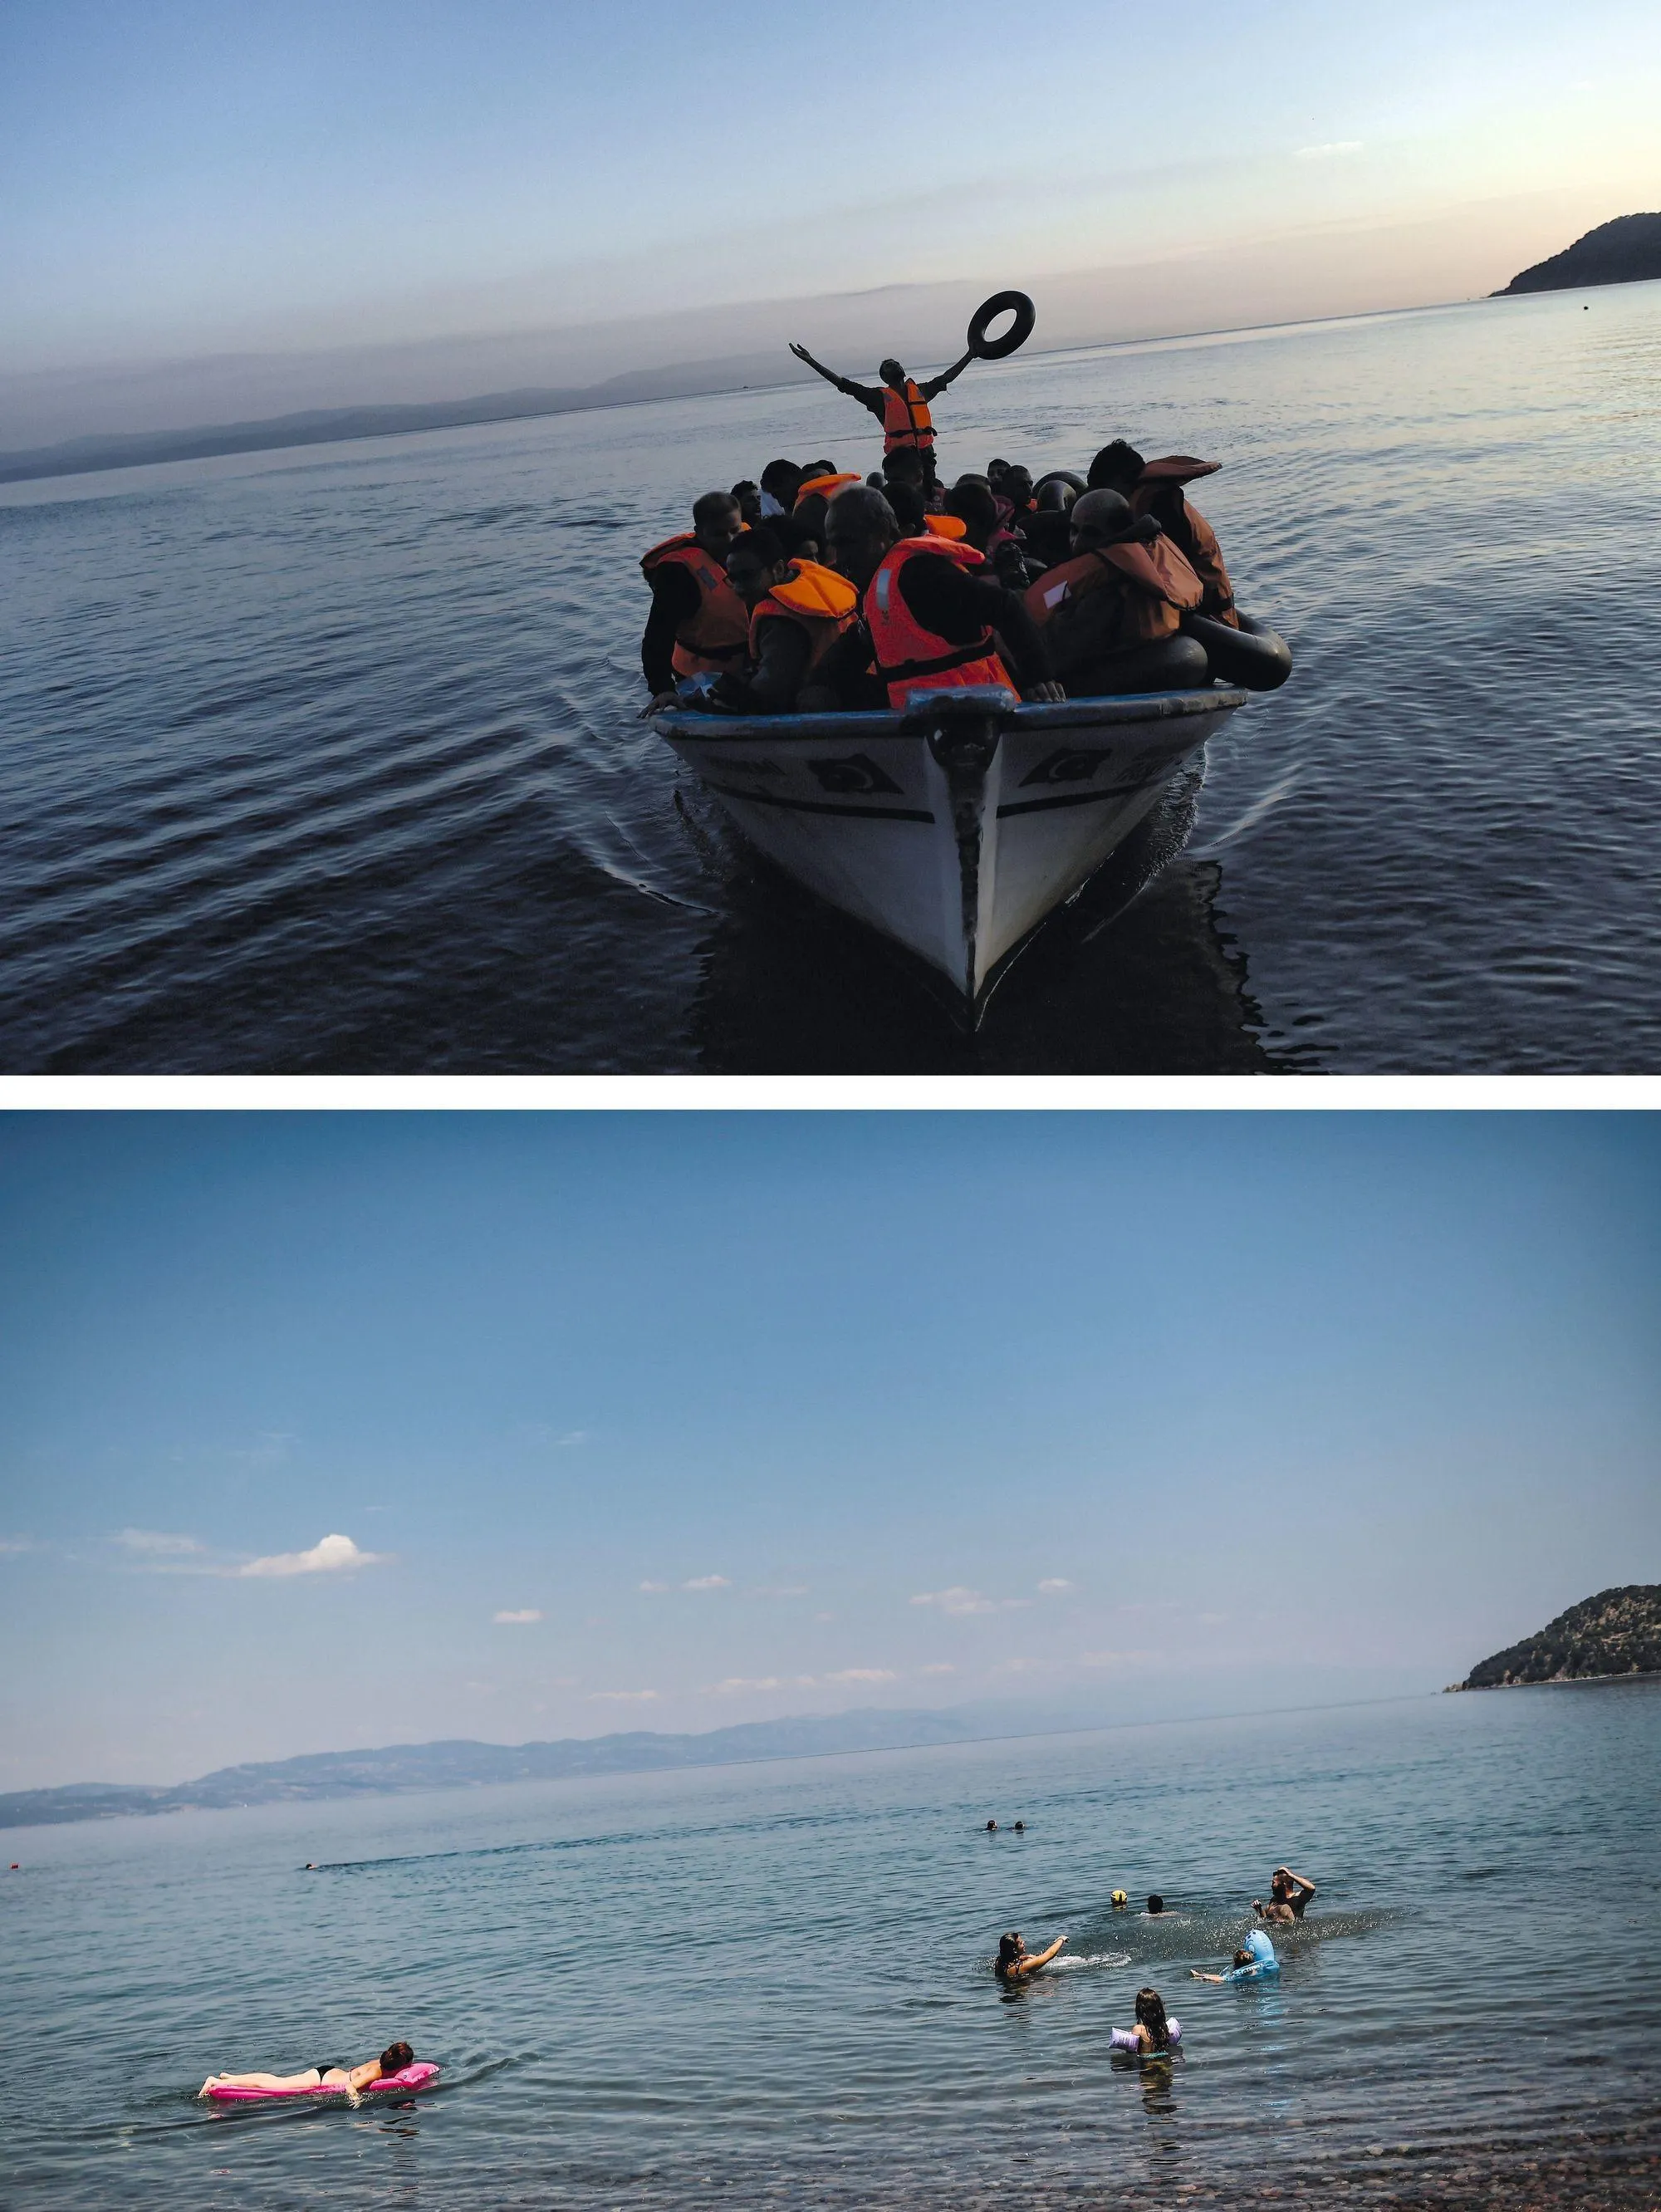 L'île grecque de Lesbos en 2015 (haut) et 2018 (bas)